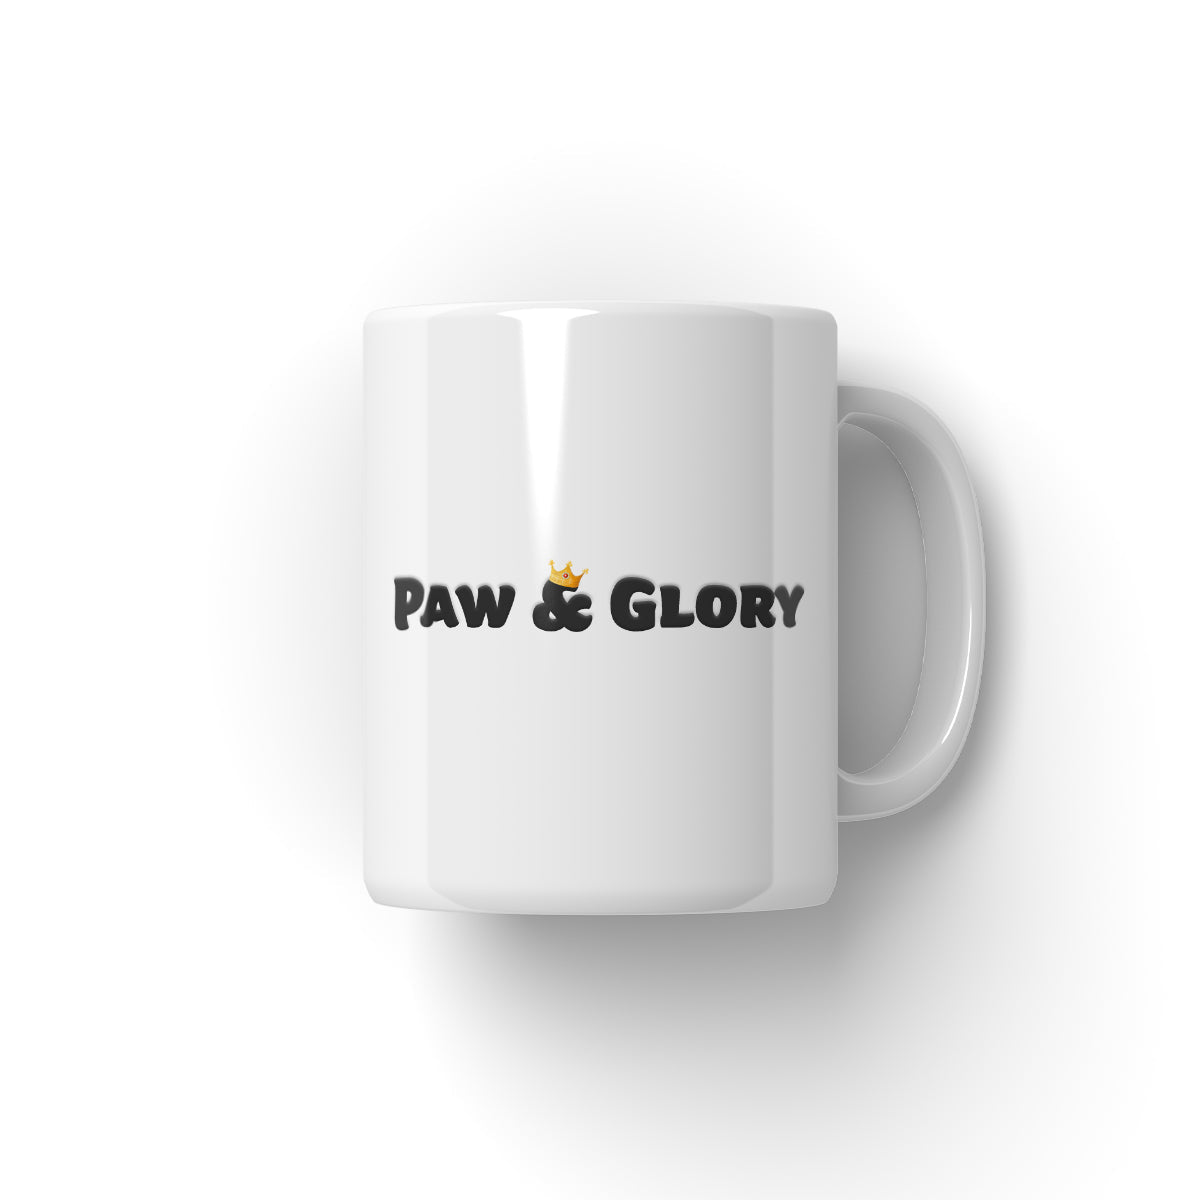 His Majesty British Flag: Custom Pet Mug - Paw & Glory - #pet portraits# - #dog portraits# - #pet portraits uk#paw and glory, custom pet portrait Mug,personalized mug, mug with picture custom, custom cat mug, pet face mug, create custom mug